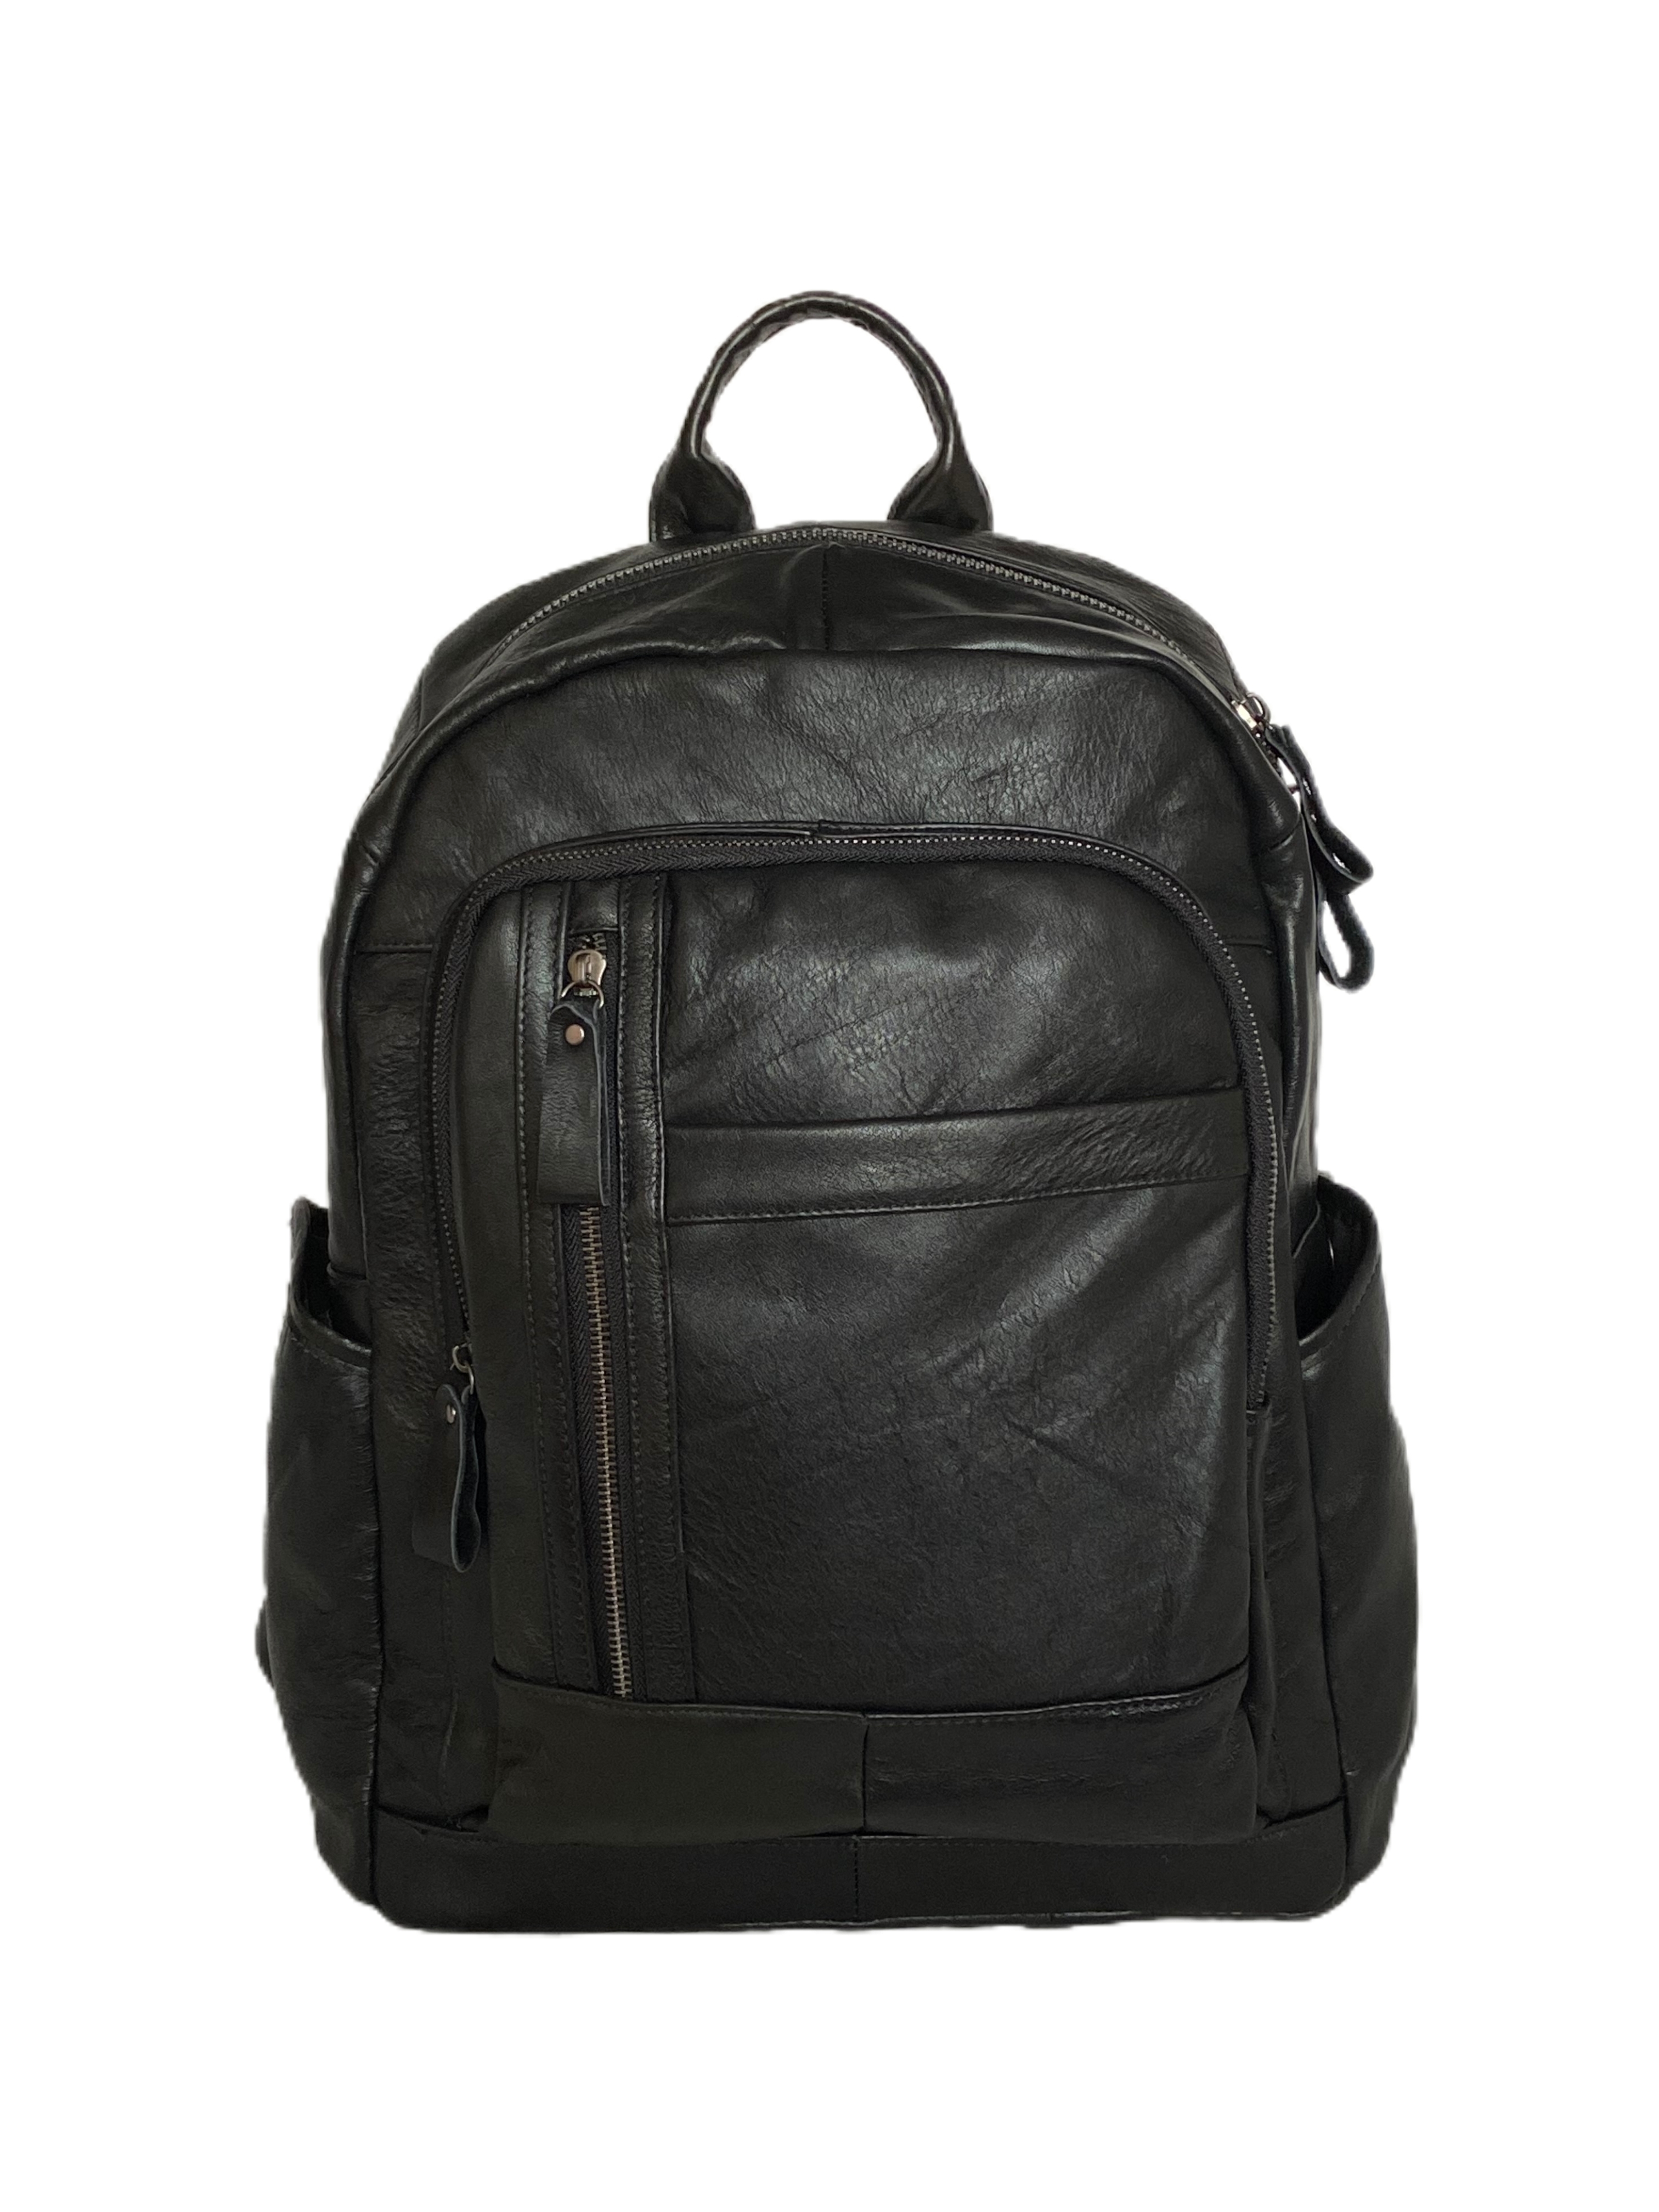 Рюкзак мужской TAYBR TAY-5309 черный, 42x30x15 см